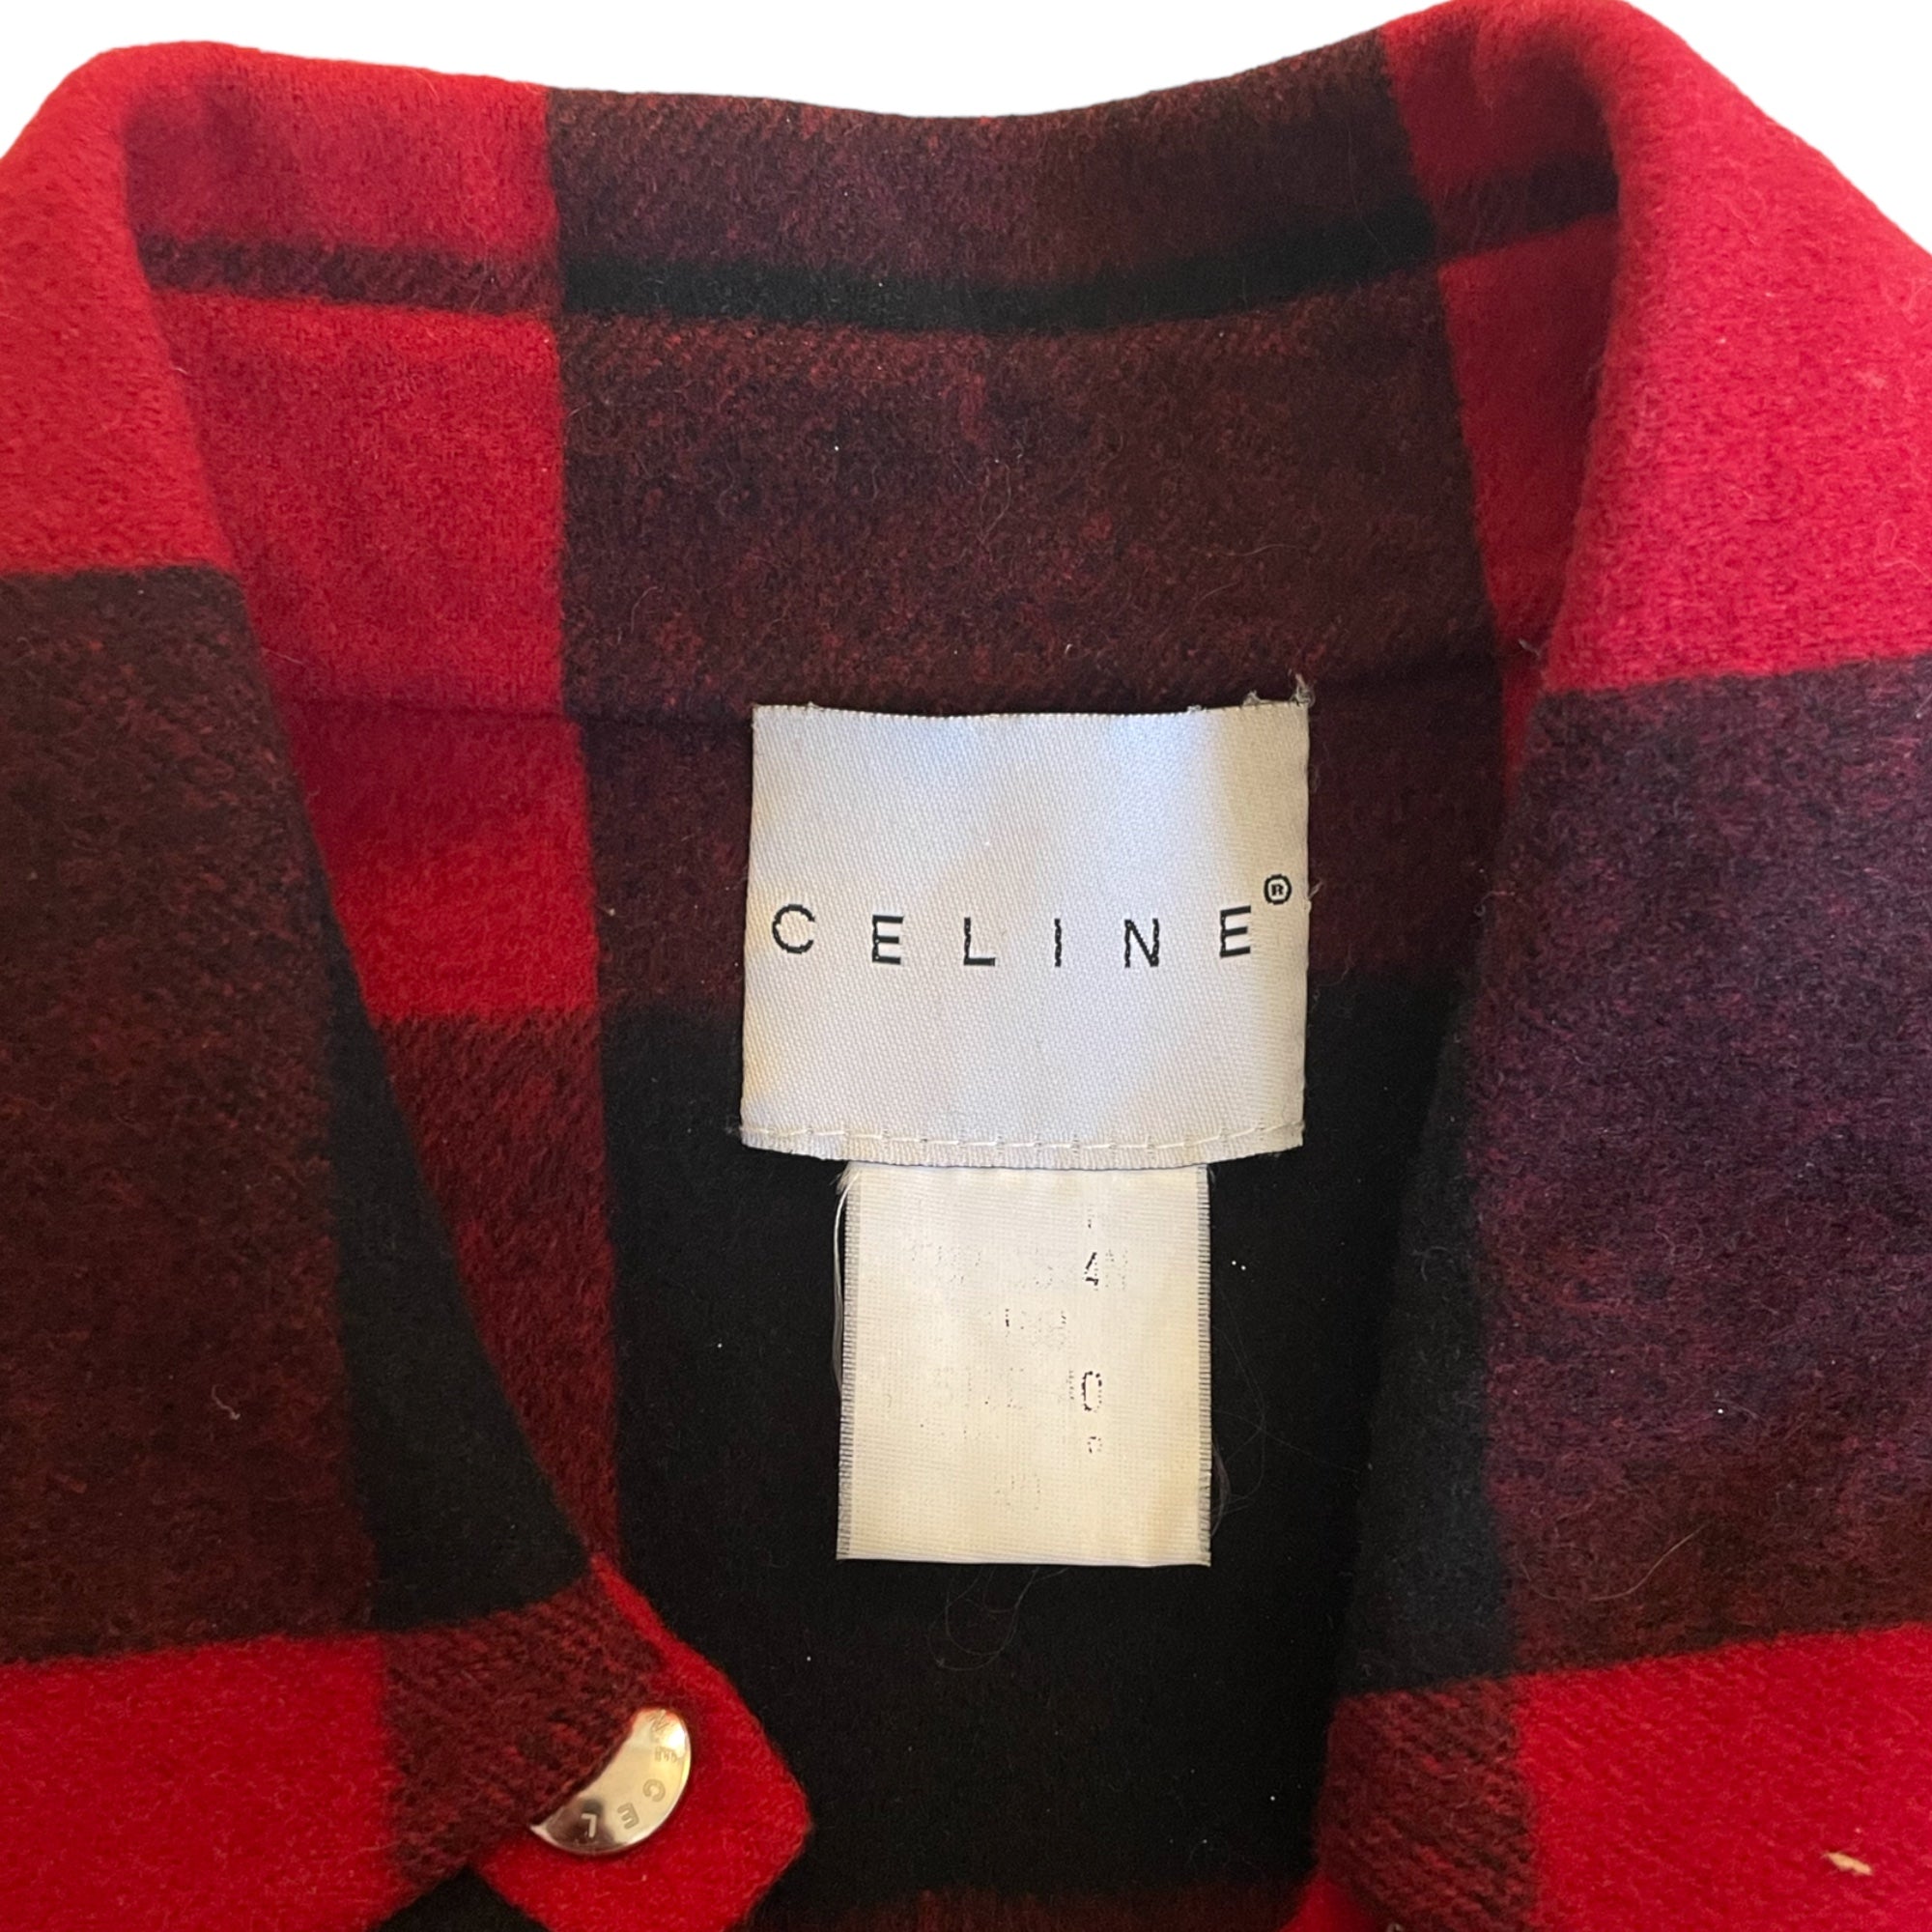 Celine red plaid shirt